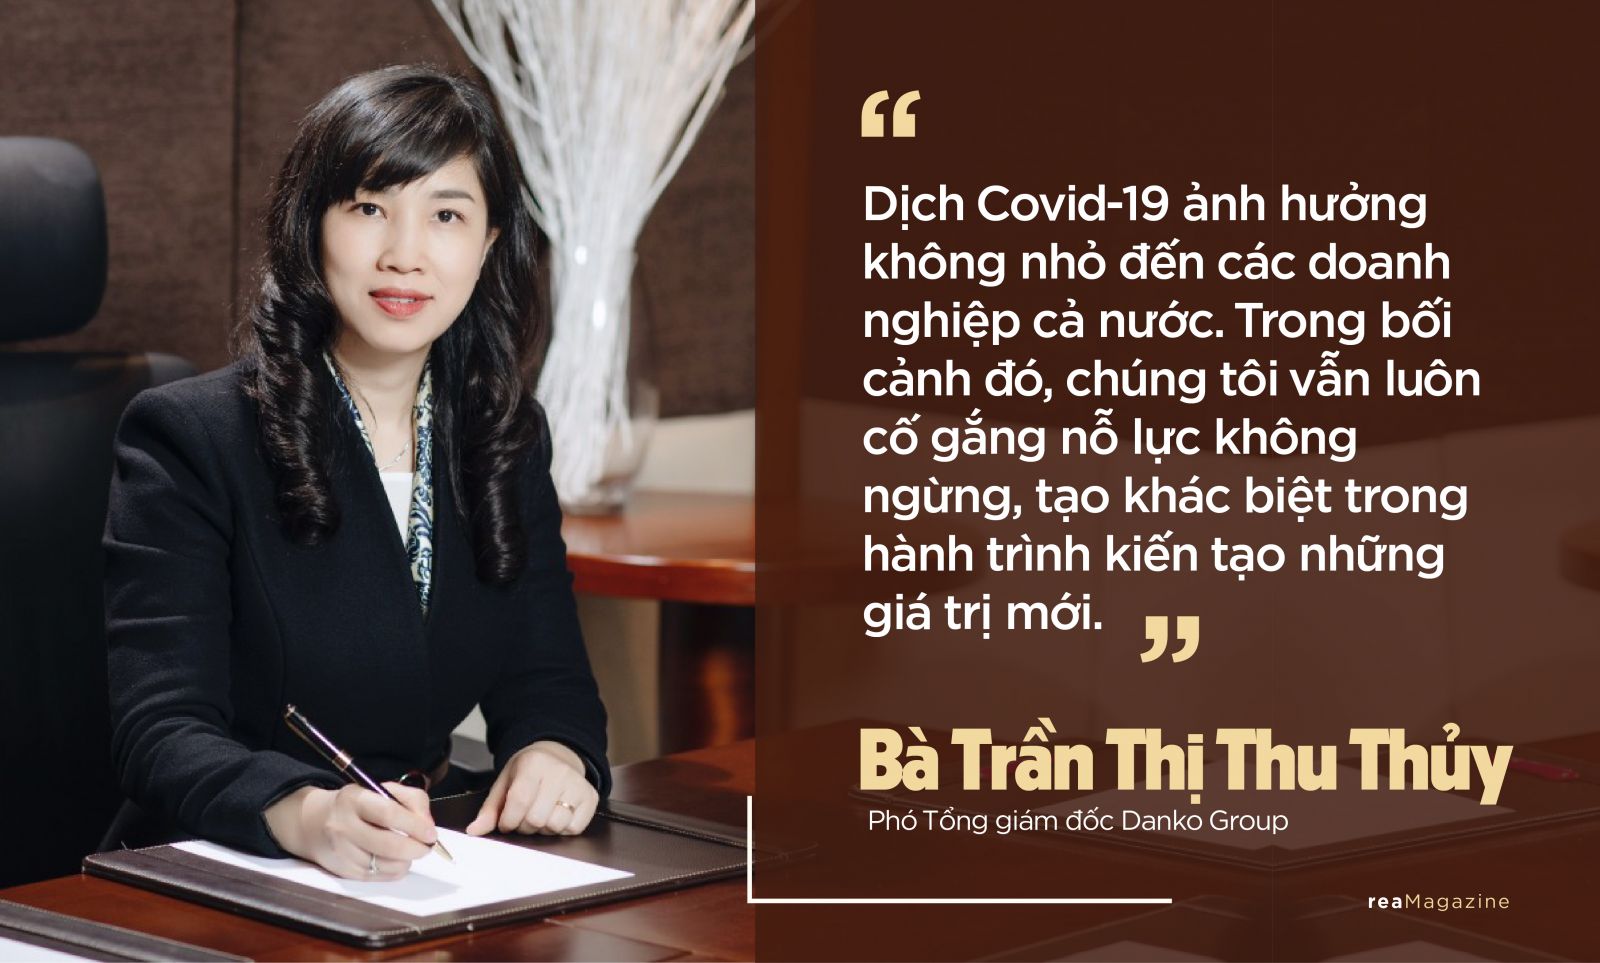 Phó Tổng giám đốc Danko Trần Thu thuỷ